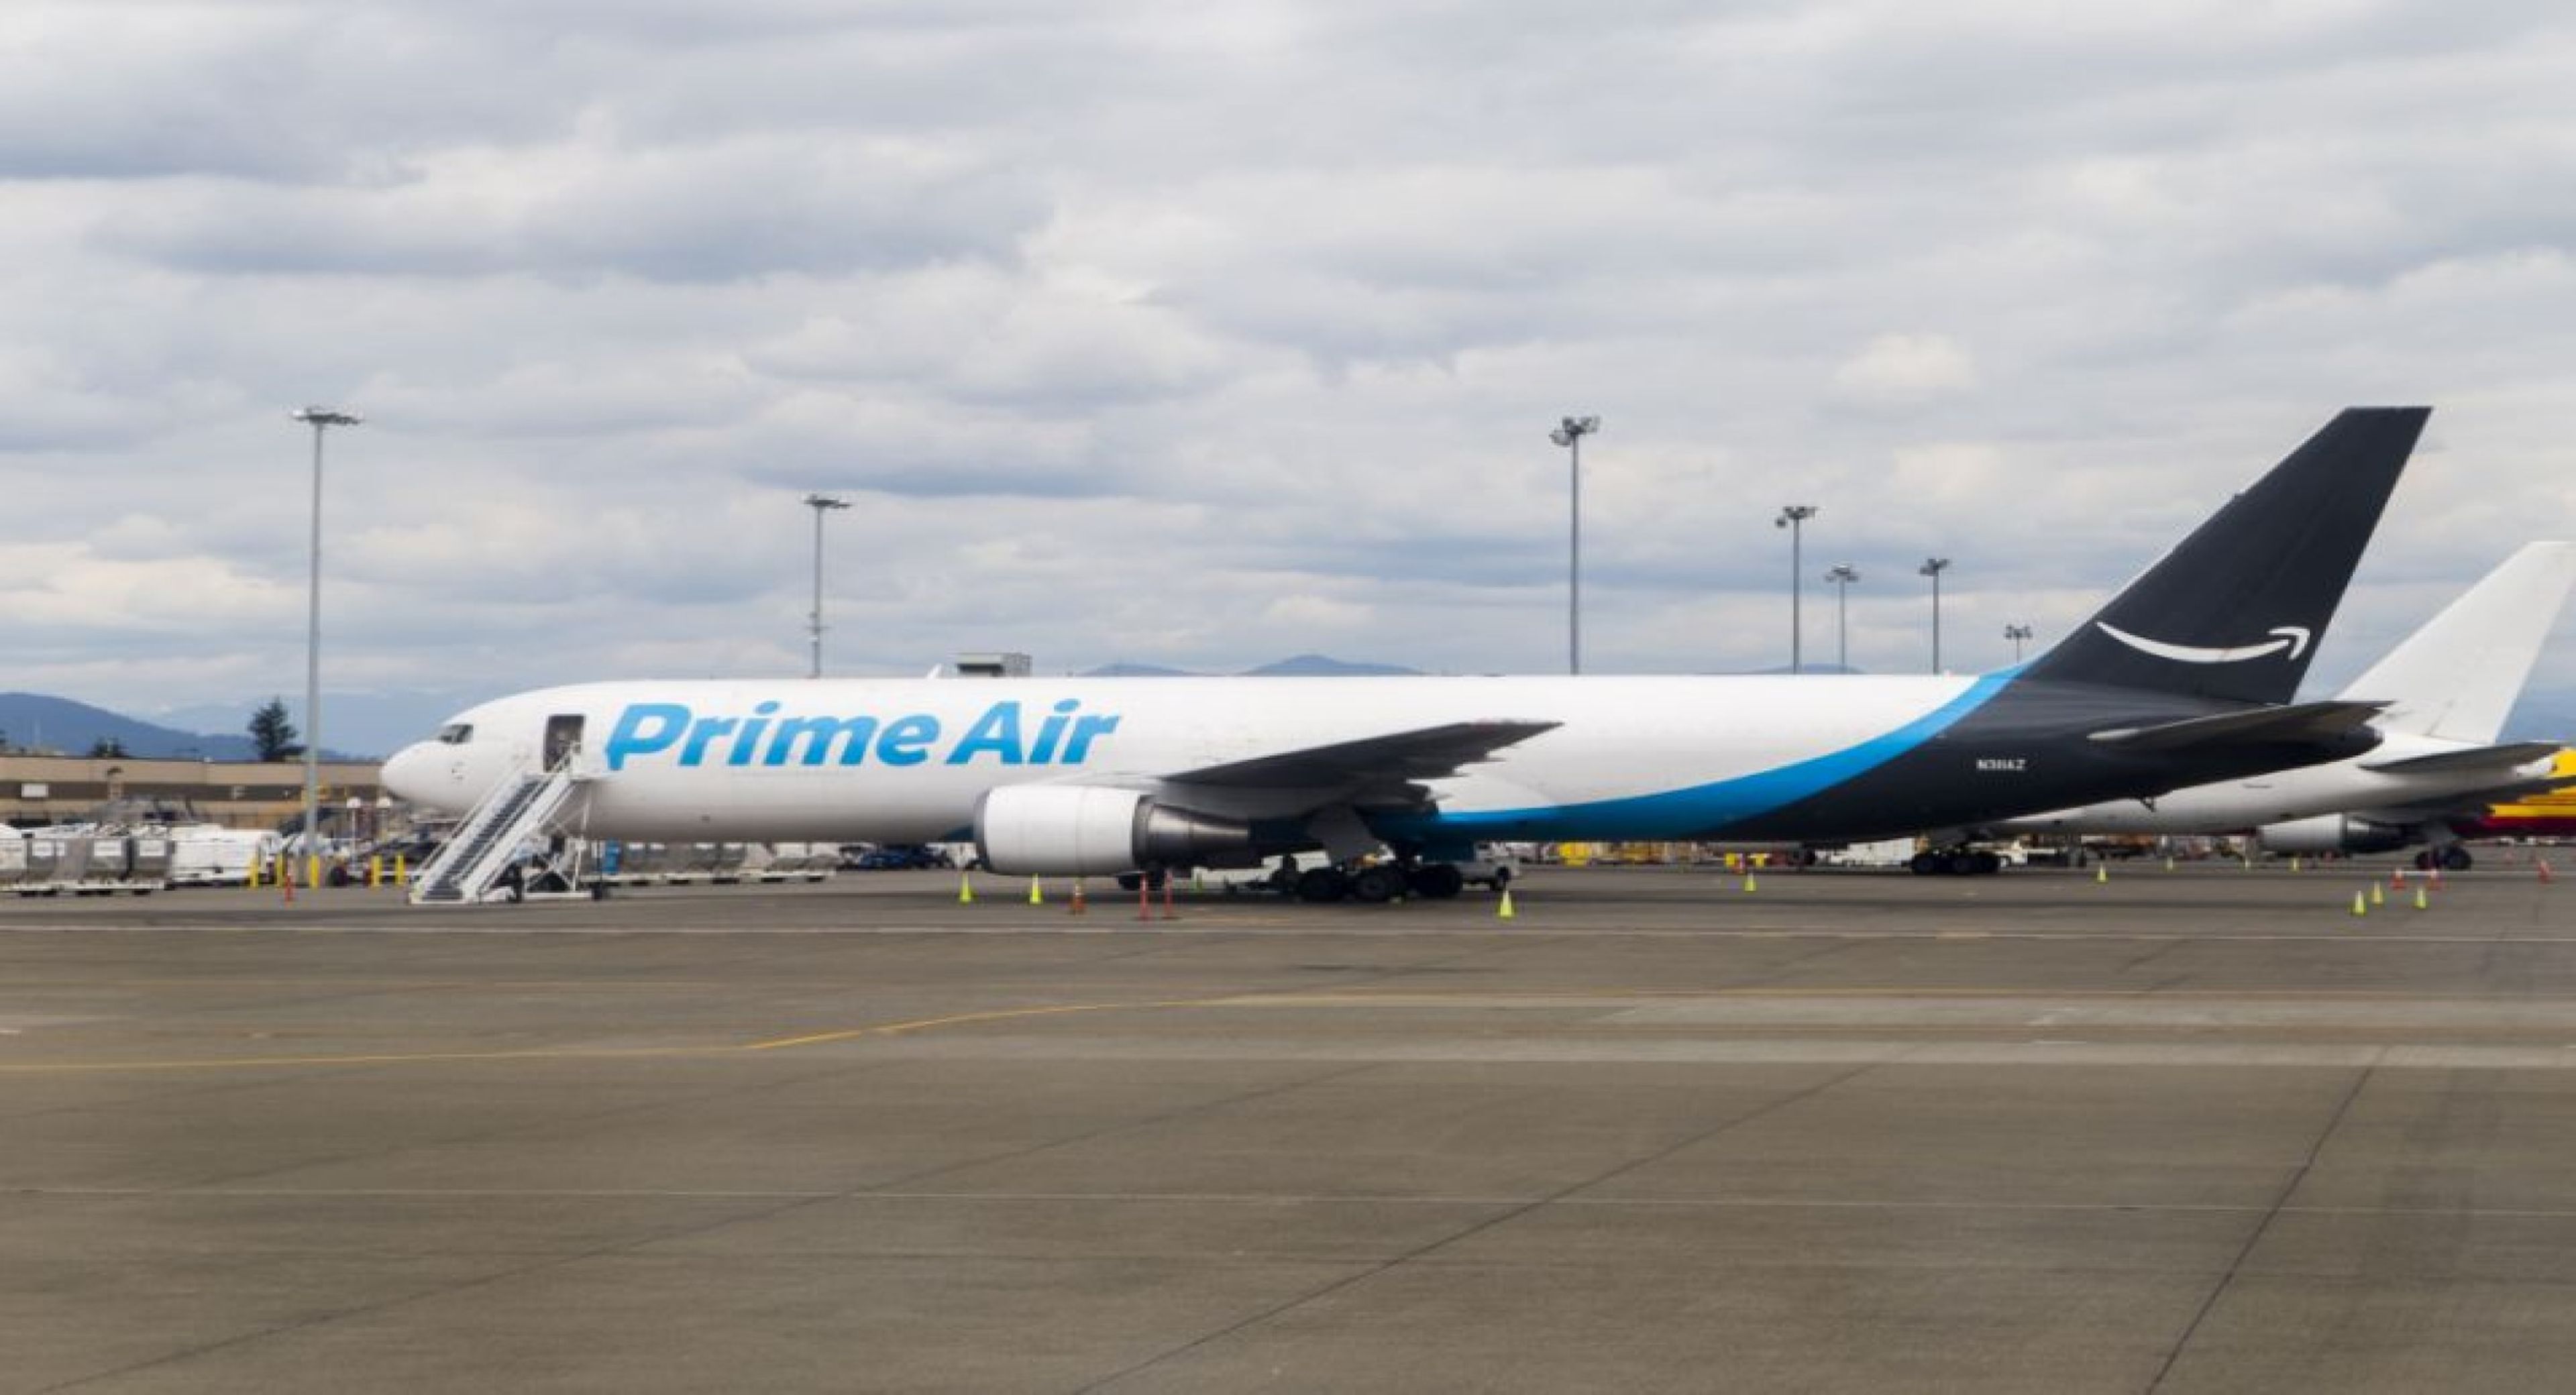 Prime Air son los aviones de Amazon para hacer envíos de productos